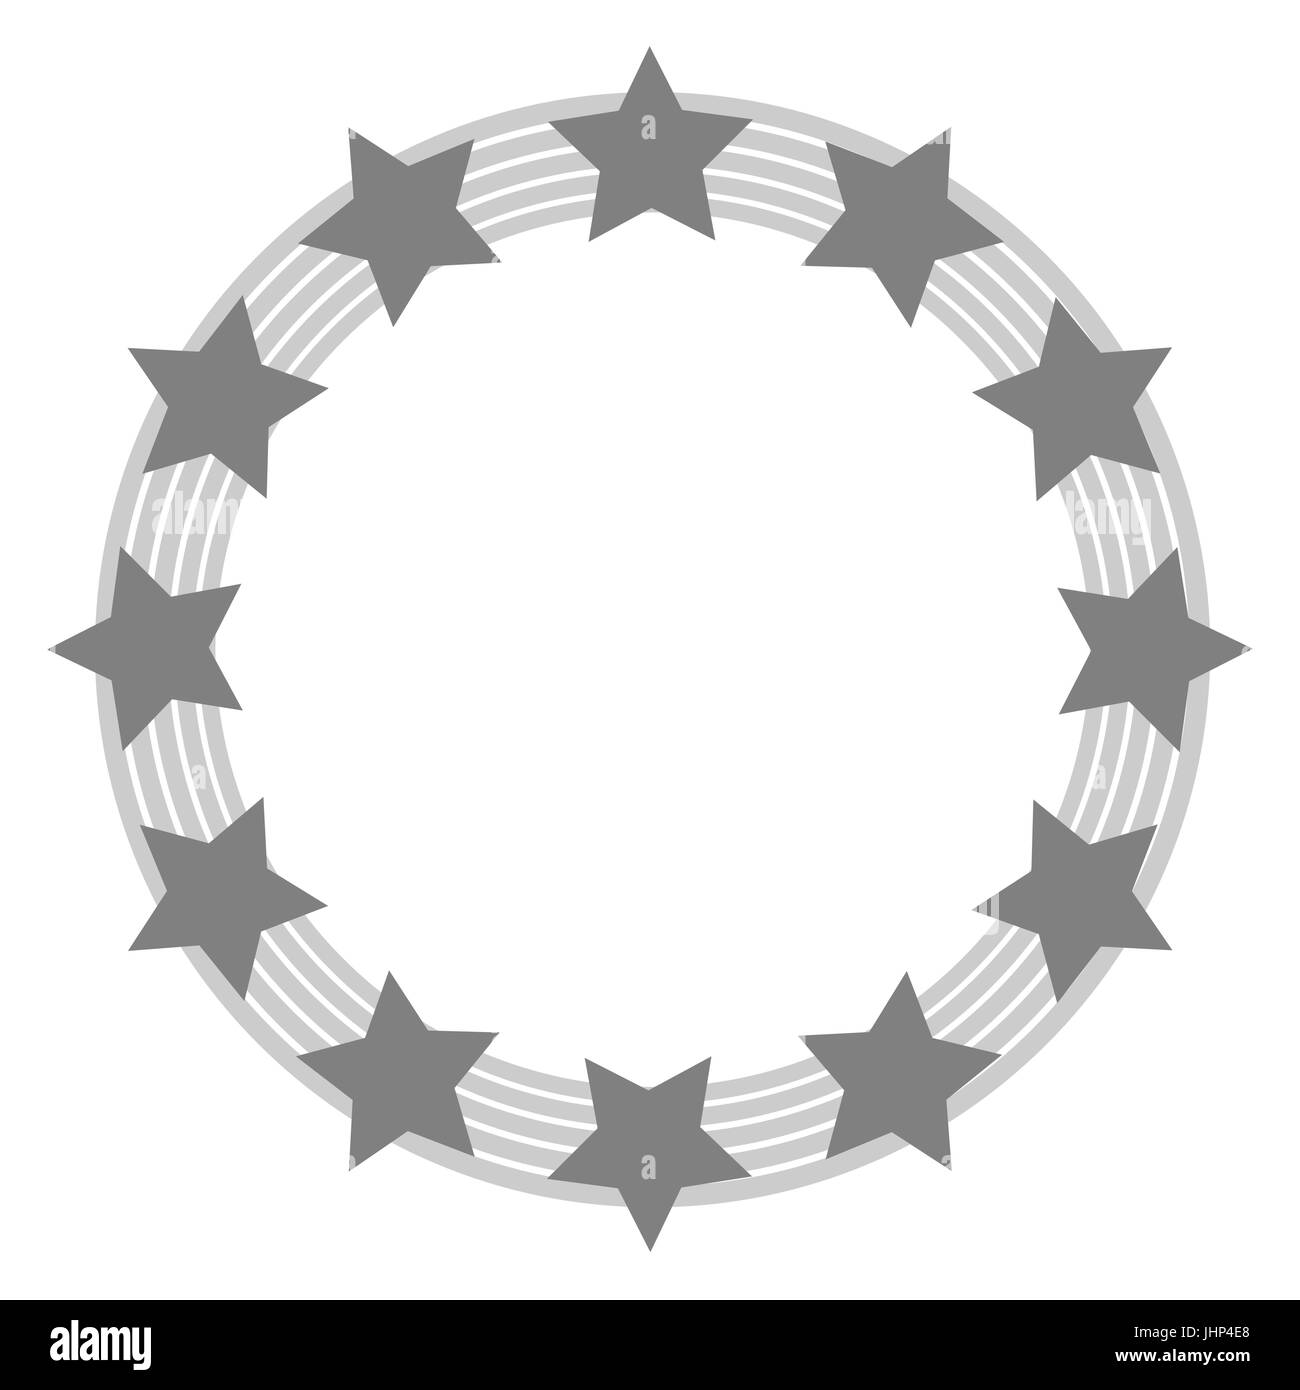 Symbole de l'Union européenne dans des tons de gris avec milieu transparent Illustration de Vecteur